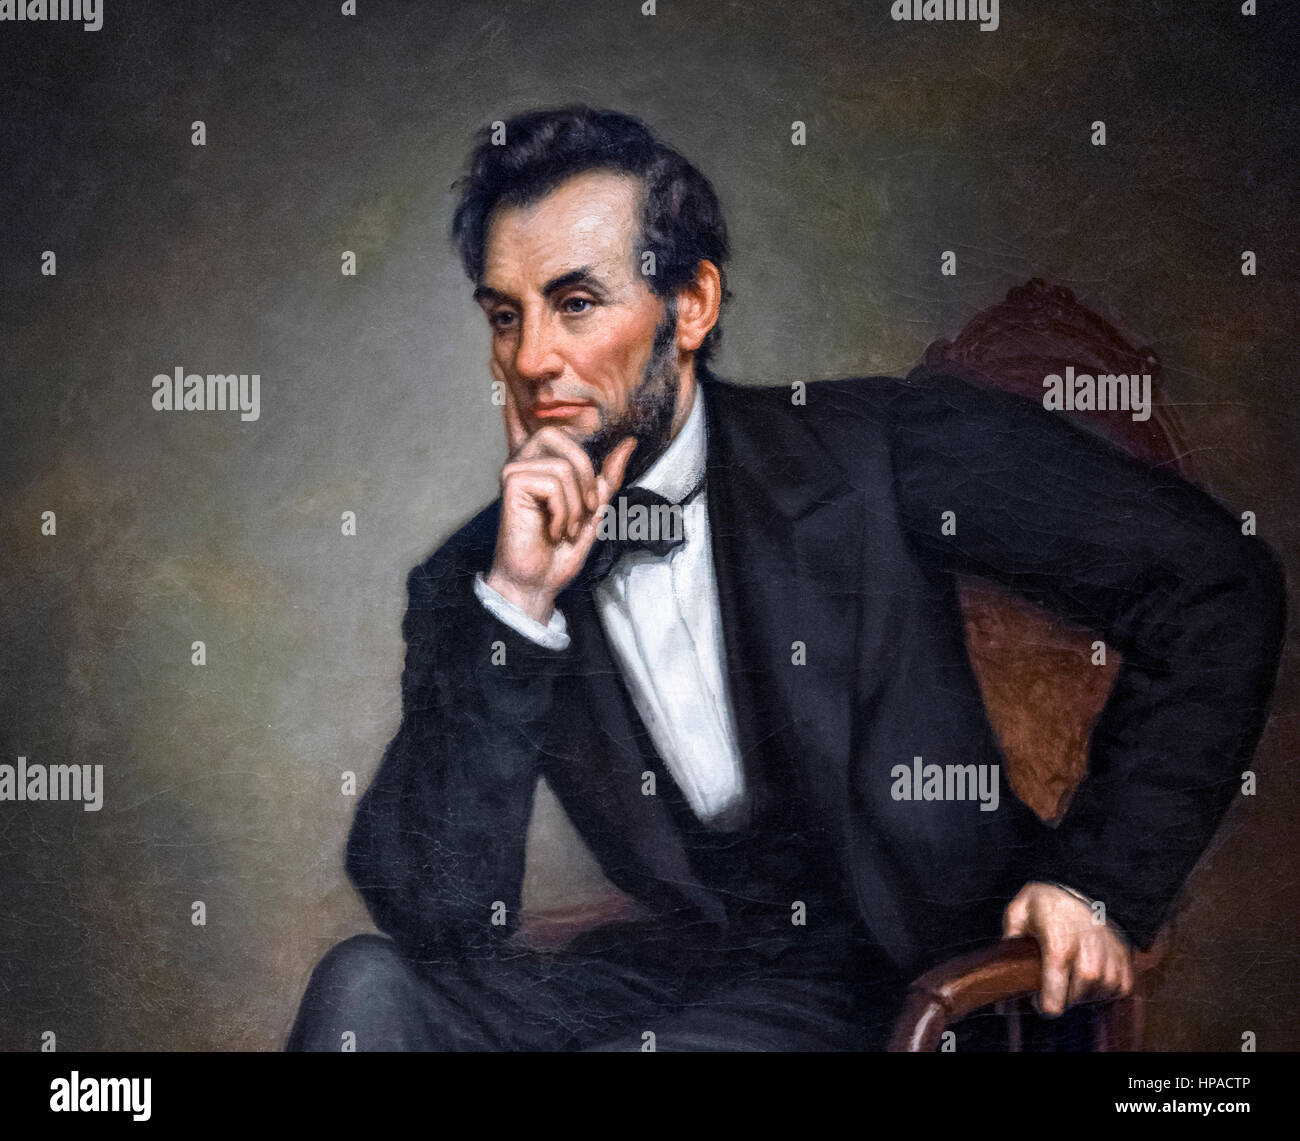 Abraham Lincoln, ritratto da George Peter Alexander Healy, olio su tela, 1887. Dettaglio di un dipinto di grandi dimensioni, HPACTR. Foto Stock